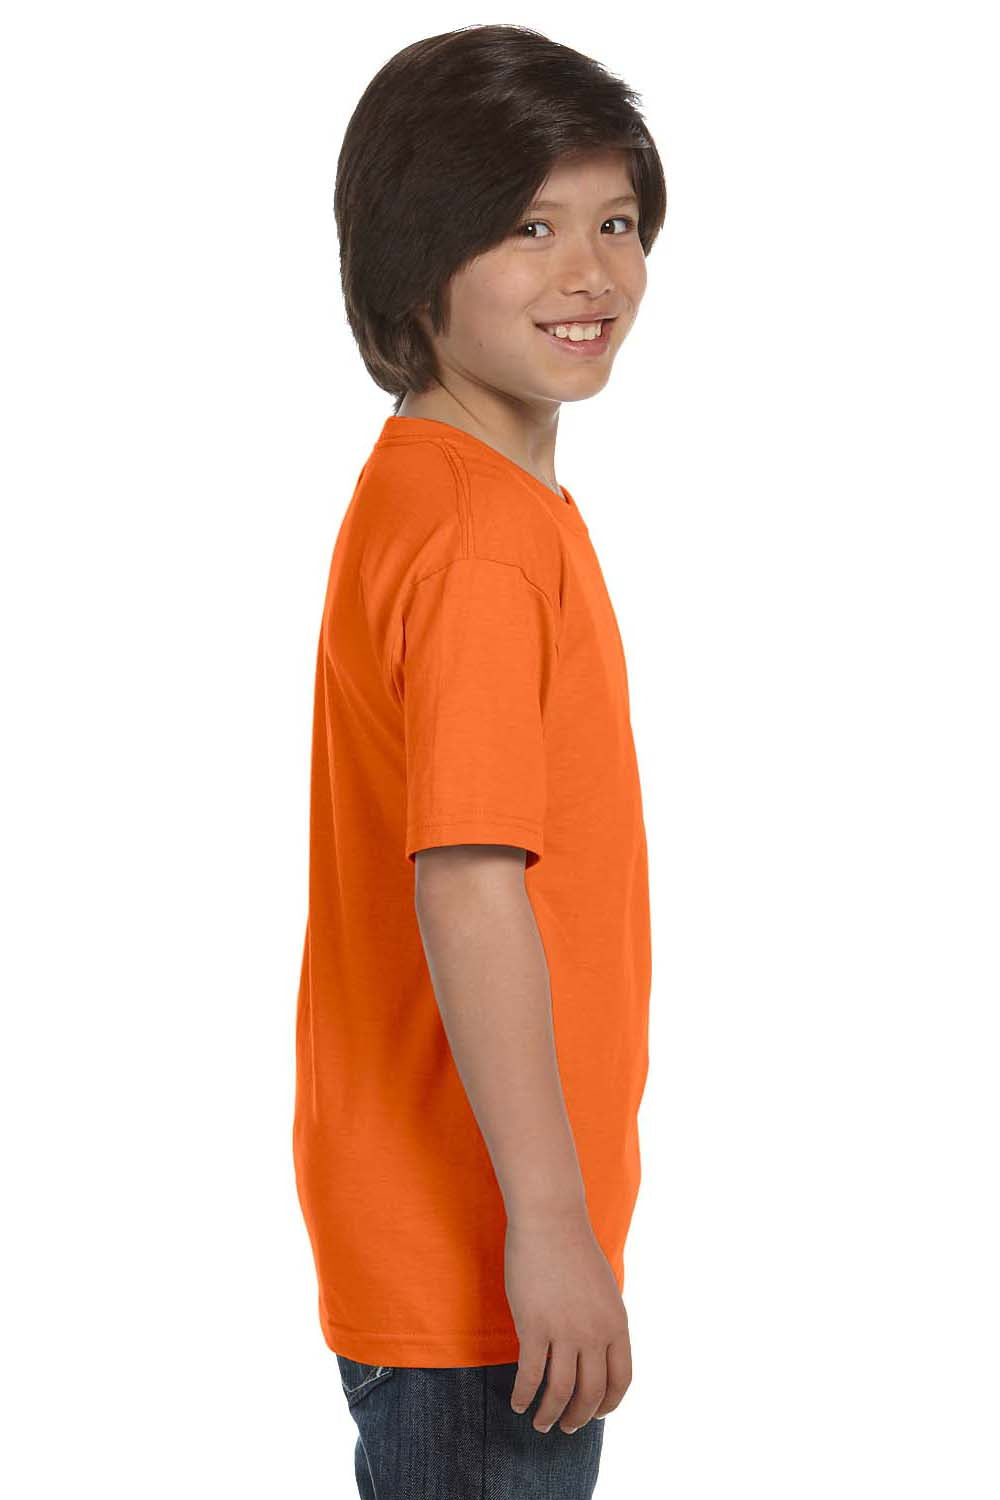 Hanes 5480 Youth ComfortSoft Short Sleeve Crewneck T-Shirt Orange Side